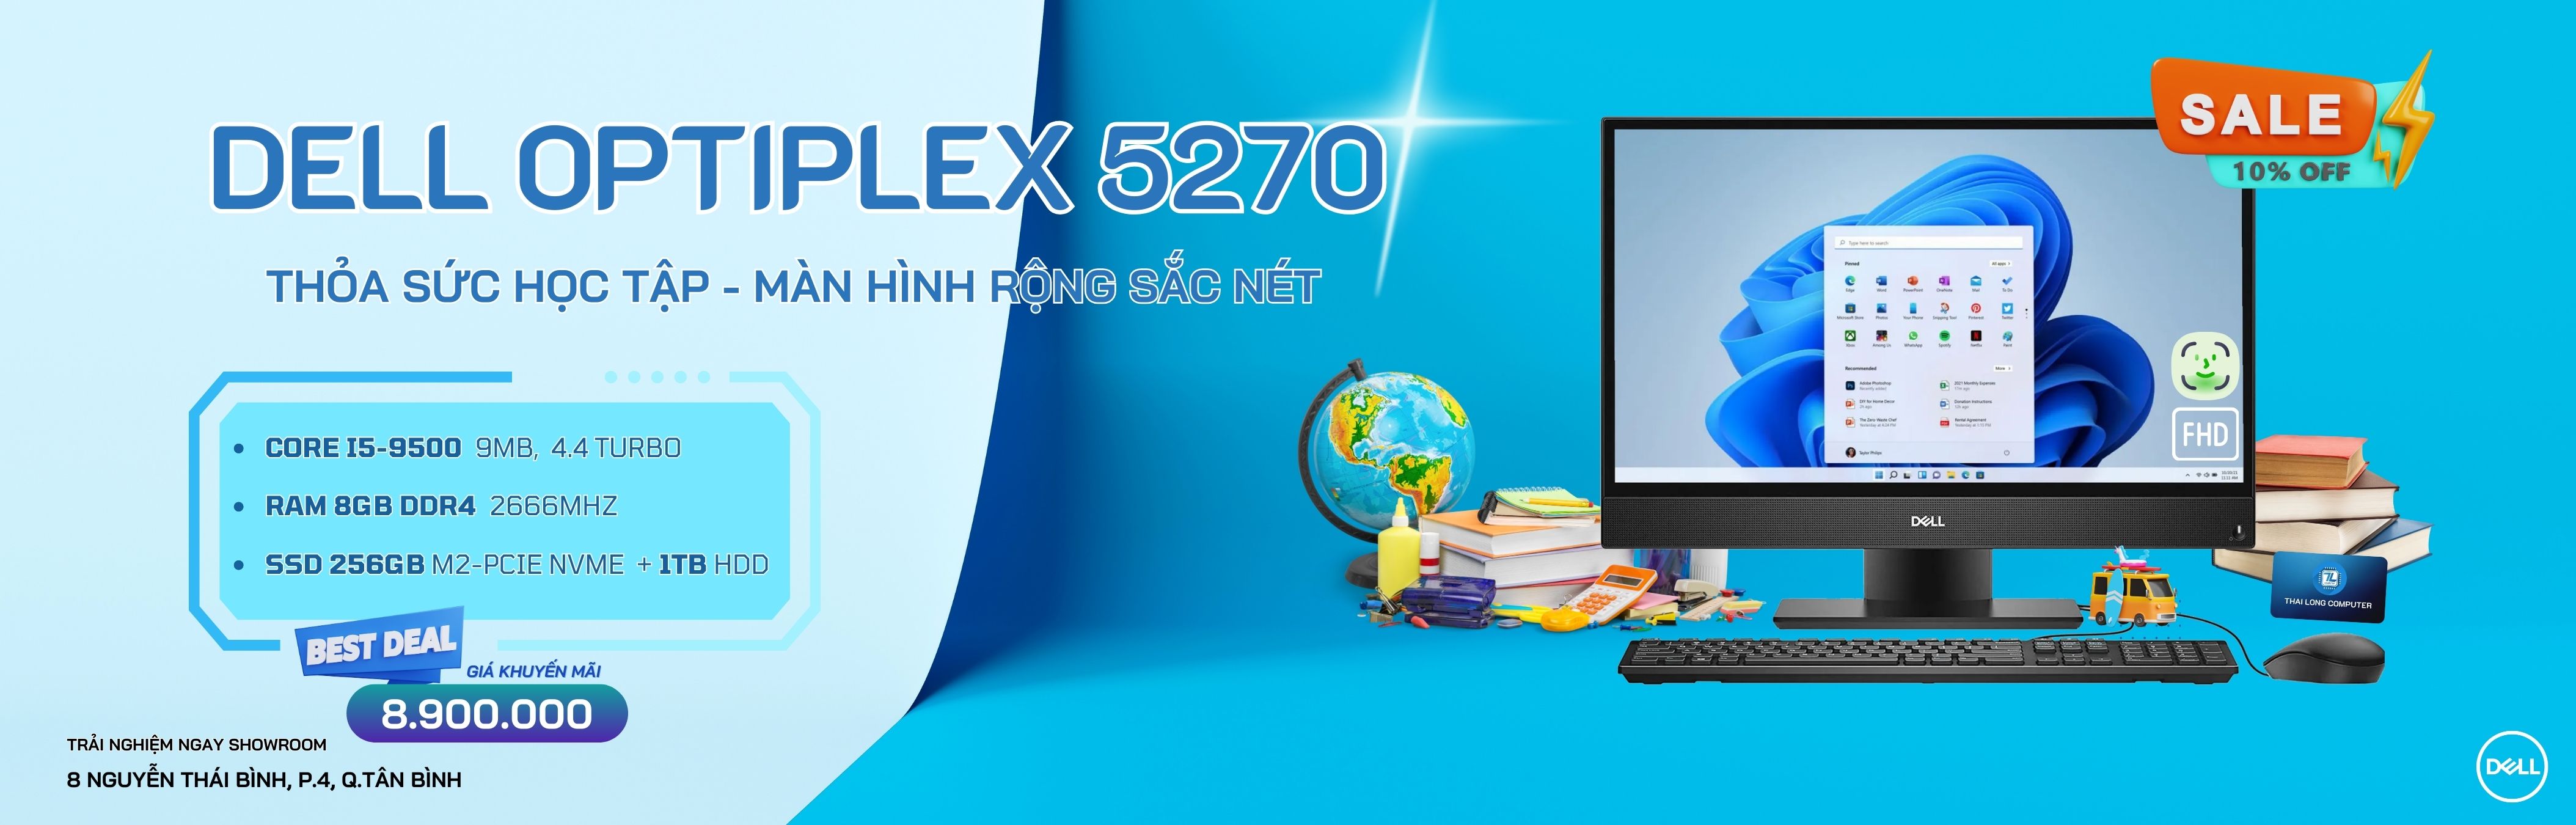 Dell Optiplex 5270 All-In-One Core I5-9500/ 16GB/ 256GB + 1TB HDD/ 21.5 FHD/ Like New 99% – Full Box )